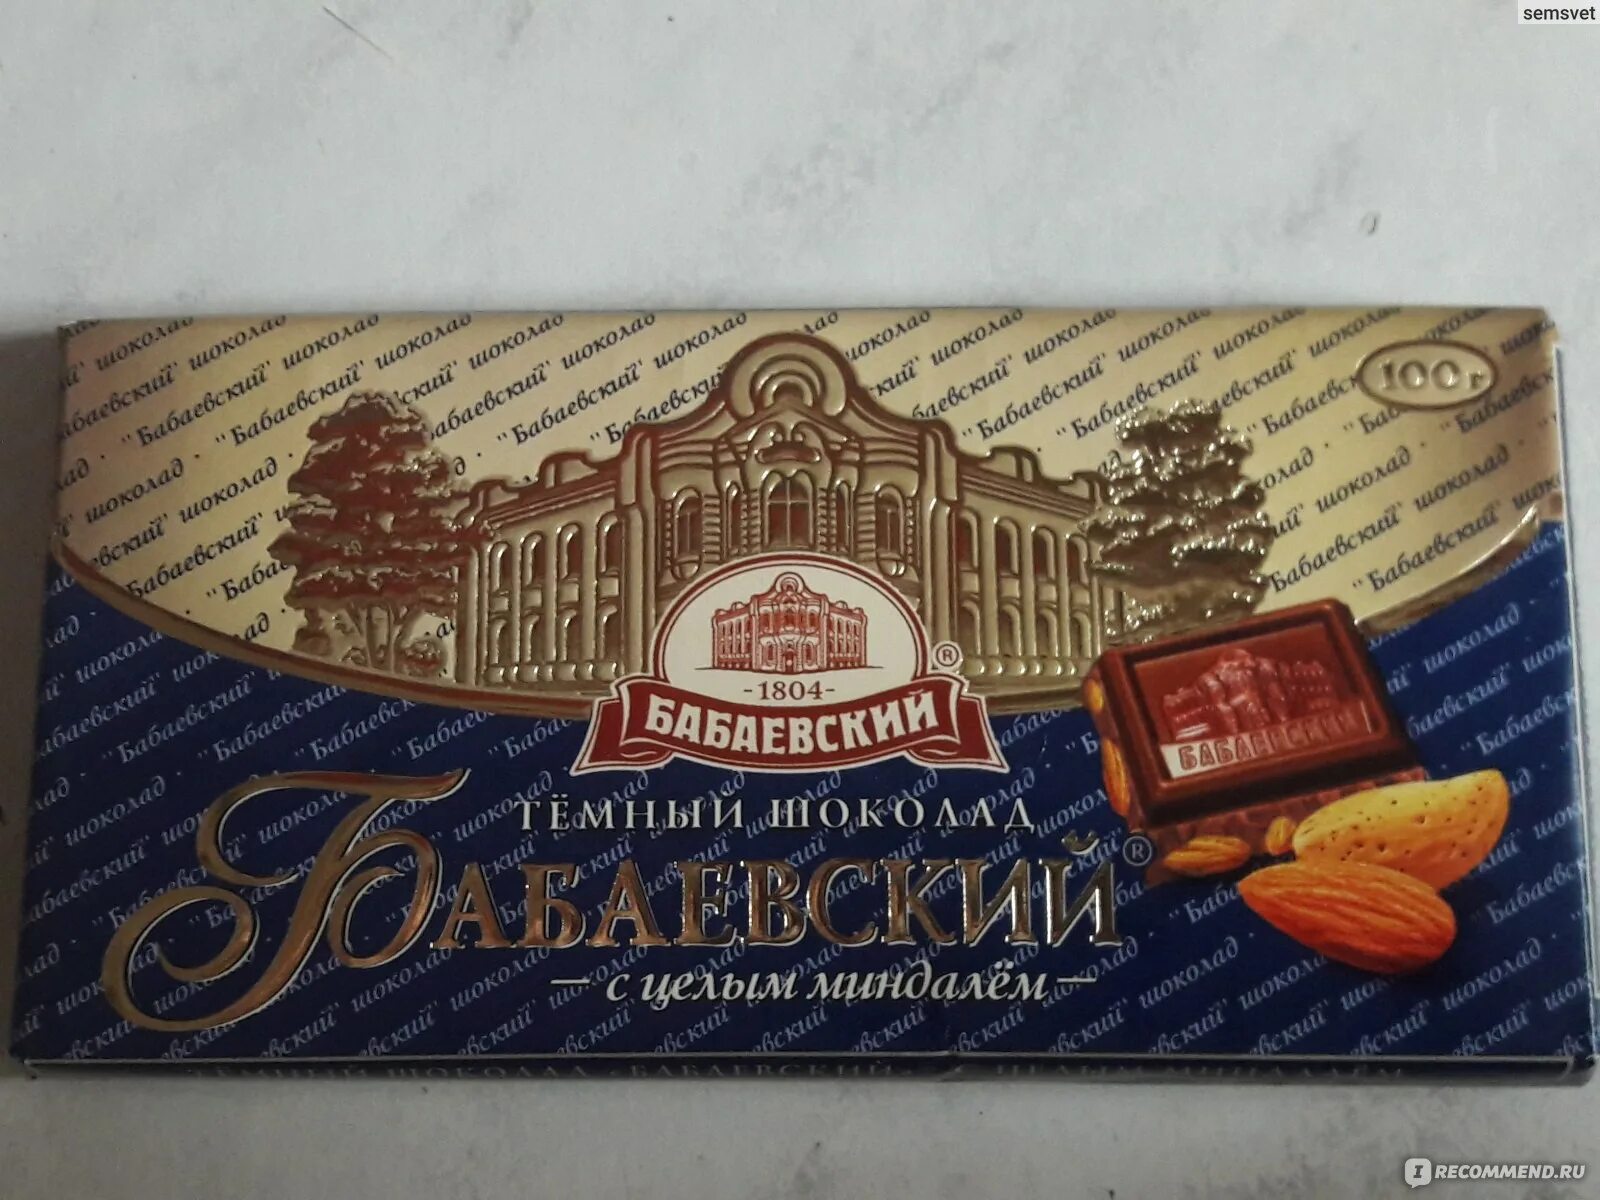 Шоколад бабаевский с миндалем